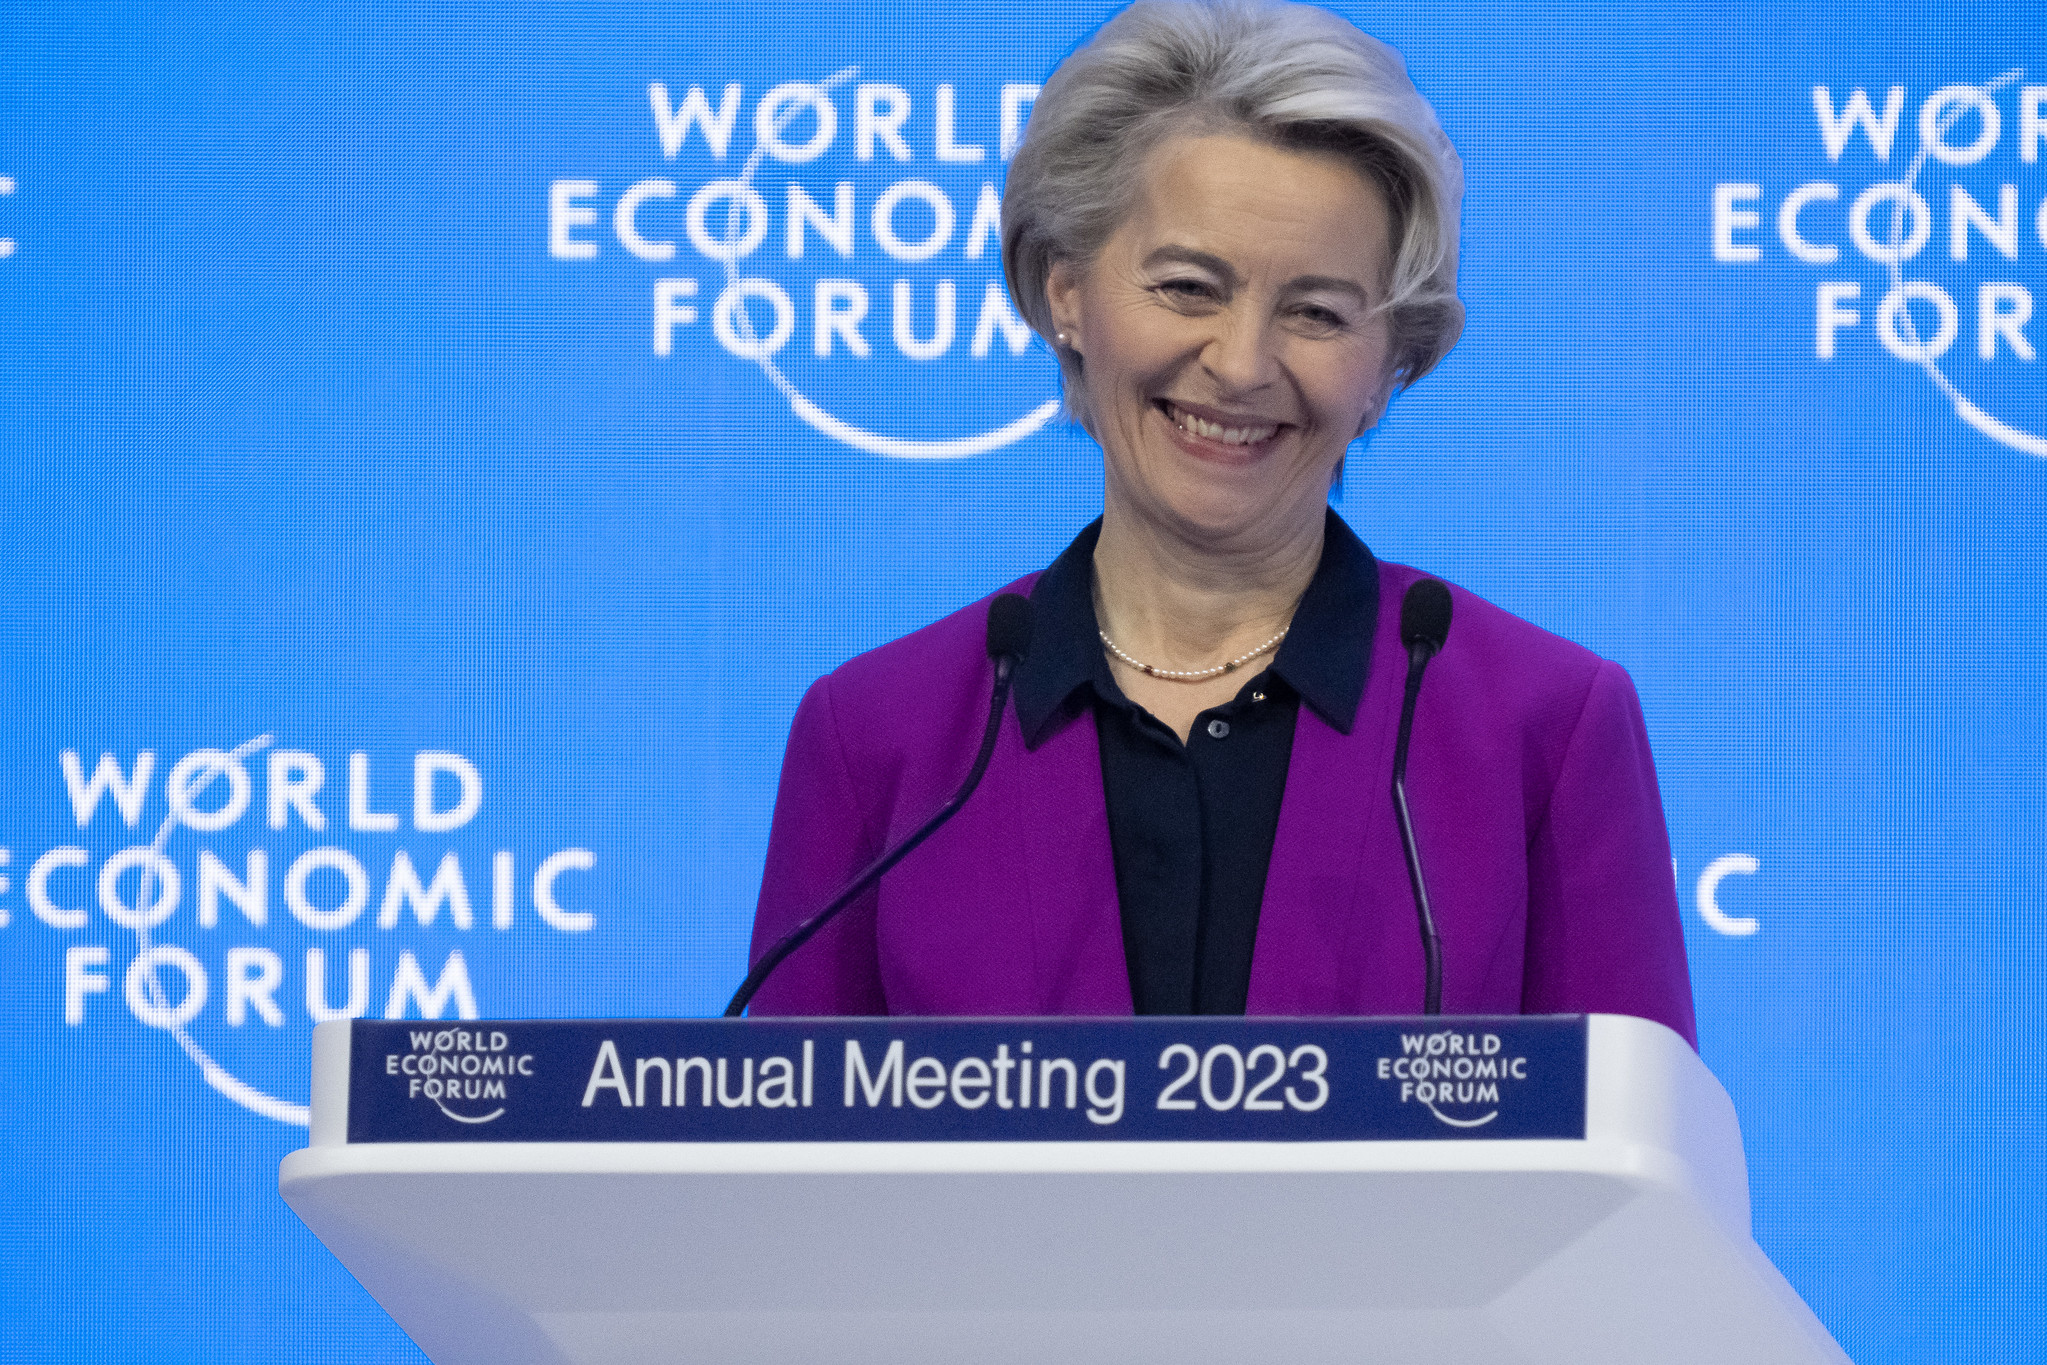 UE prepara Lei da Indústria Net Zero em resposta a subsídios dos EUA e China. Na imagem: Ursula von der Leyen, presidente da Comissão Europeia em discurso especial na Reunião Anual do Fórum Econômico Mundial 2023, em Davos (Foto: Greg Beadle/WEF)